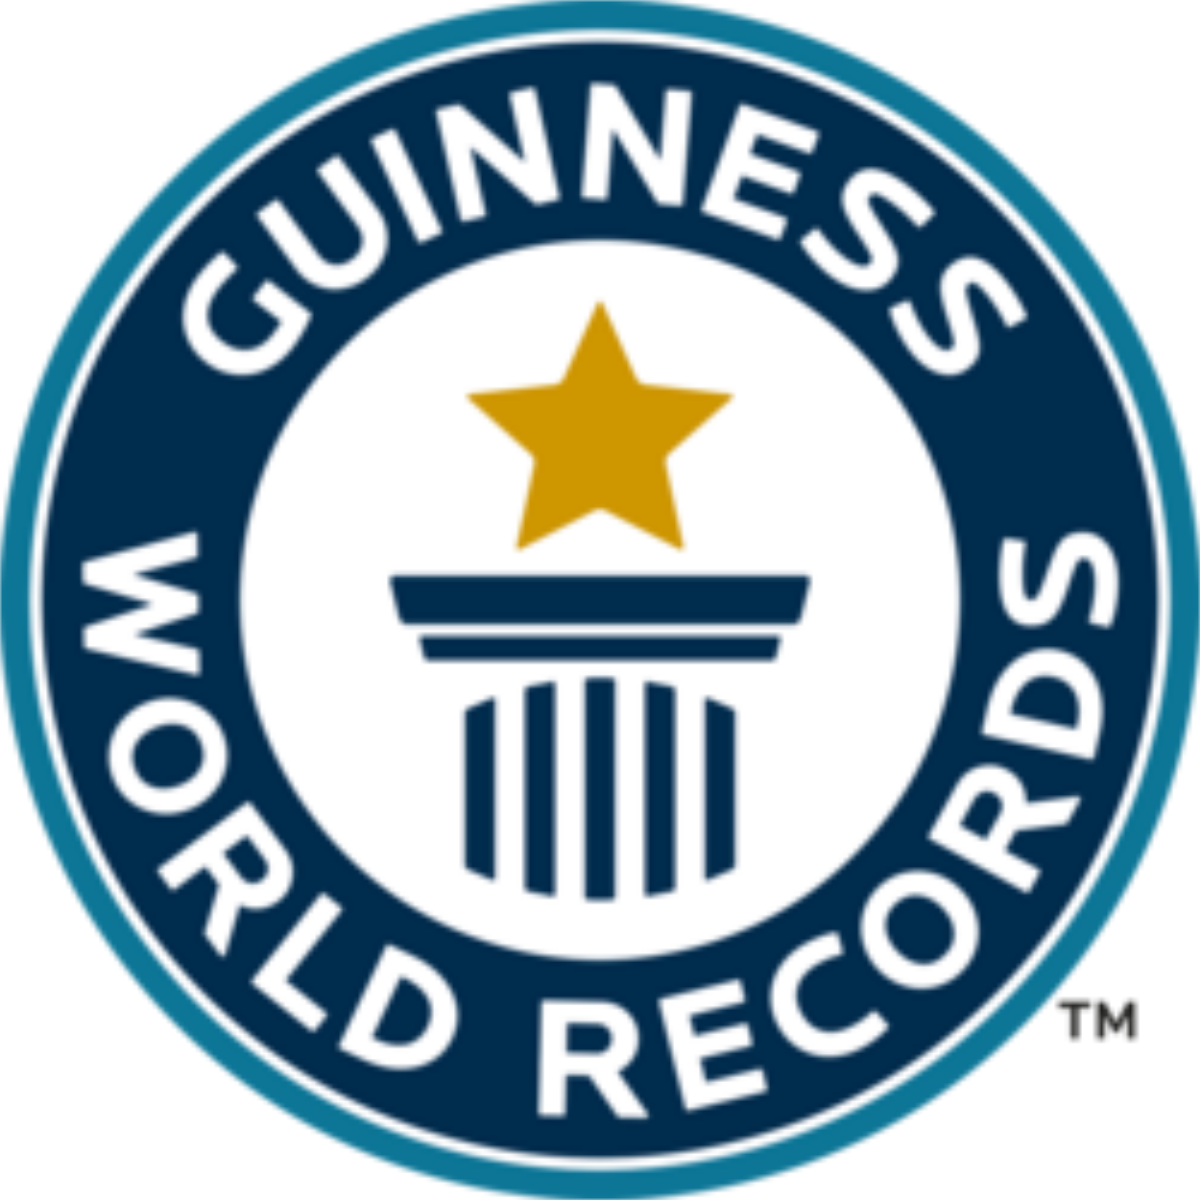 Break a world record